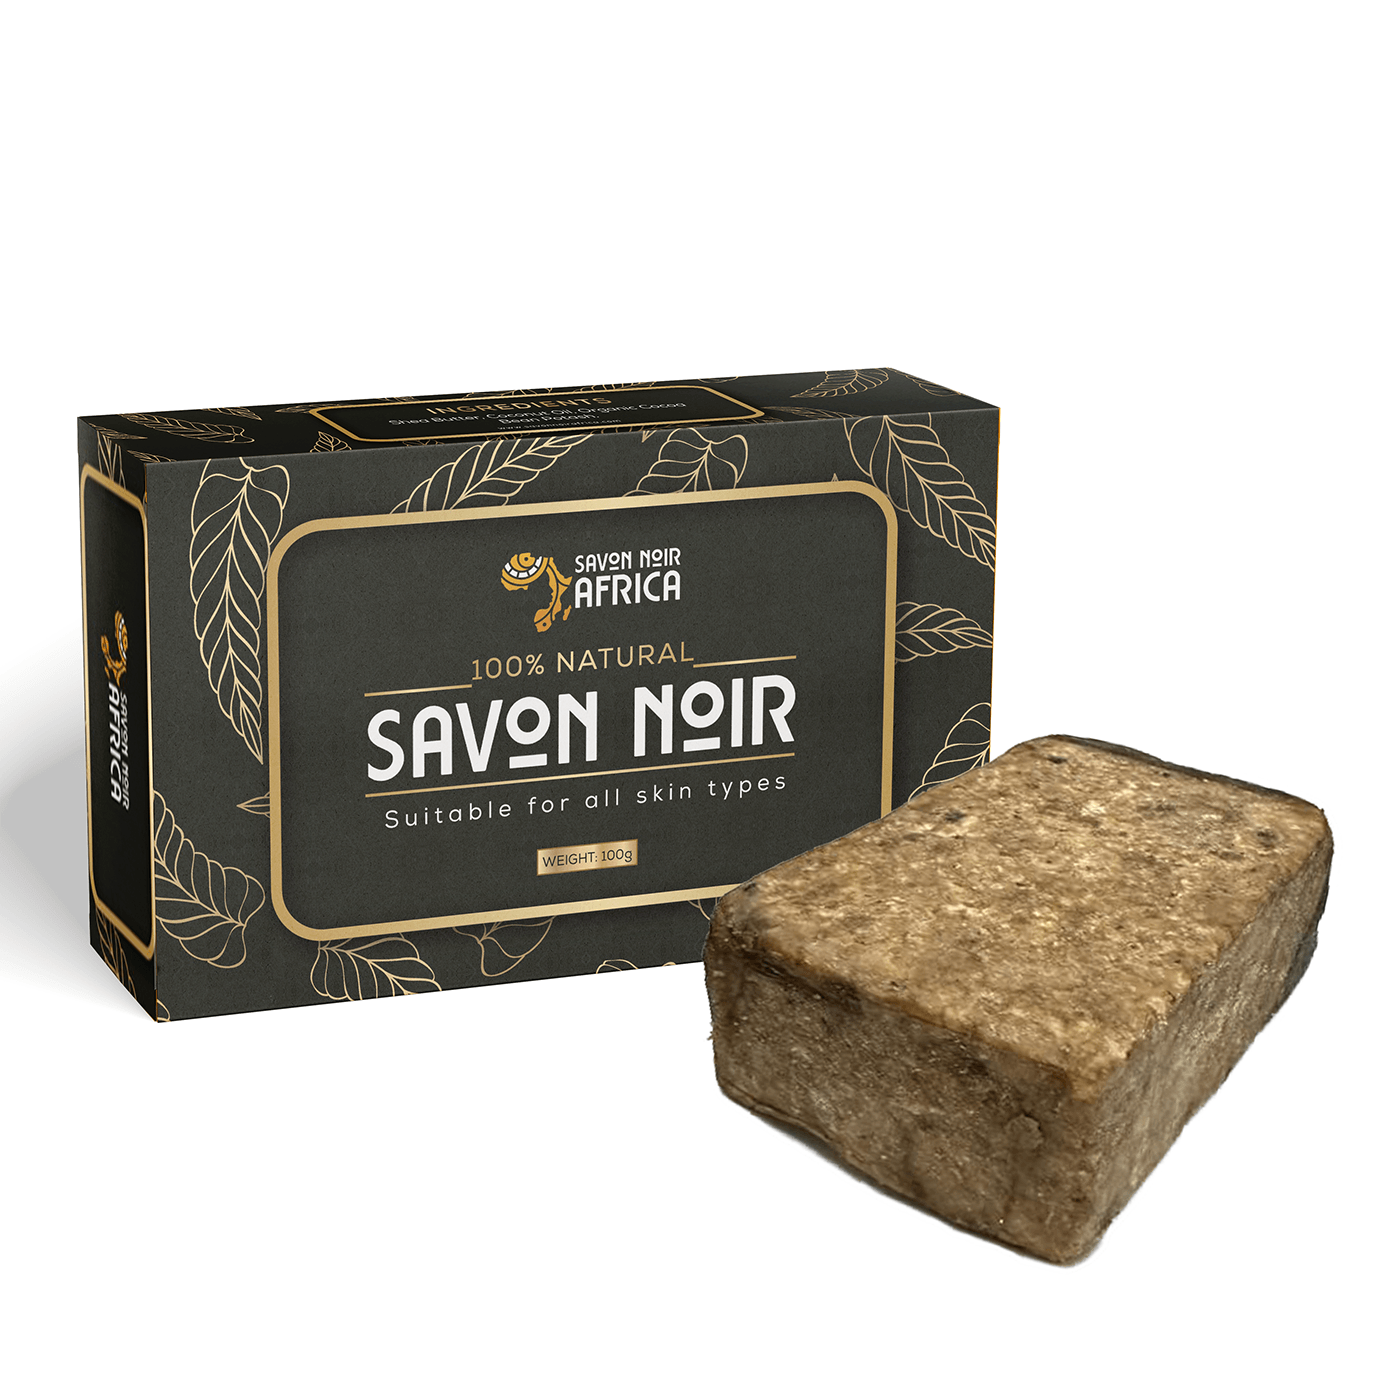 soap label Soap Box Design black label Packaging adobe illustrator Graphic Designer African Soap African soap label handmade Soap Label natural soap label